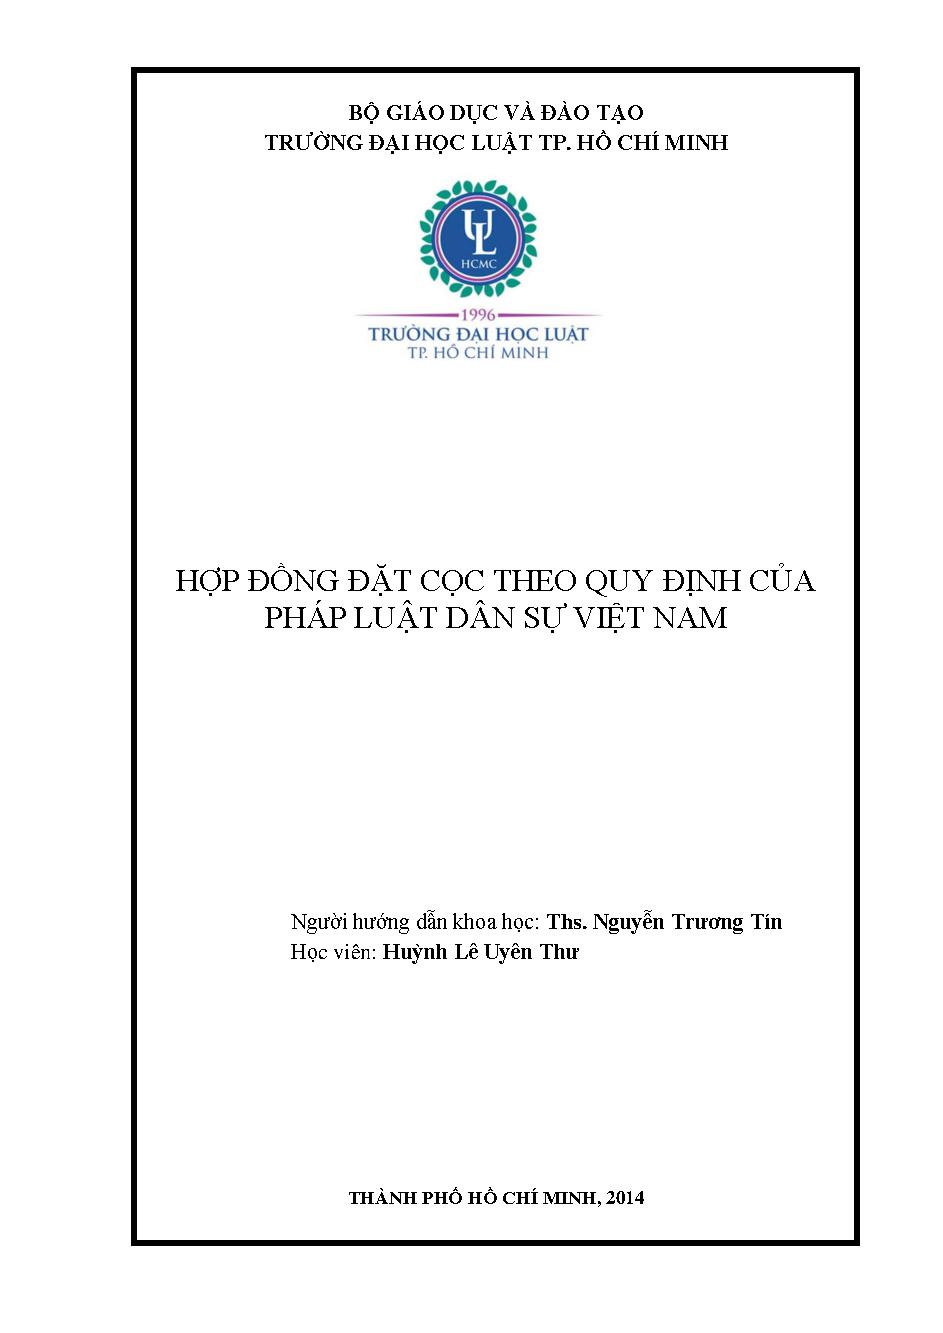 Hợp đồng đặt cọc theo quy định của pháp luật dân sự Việt Nam